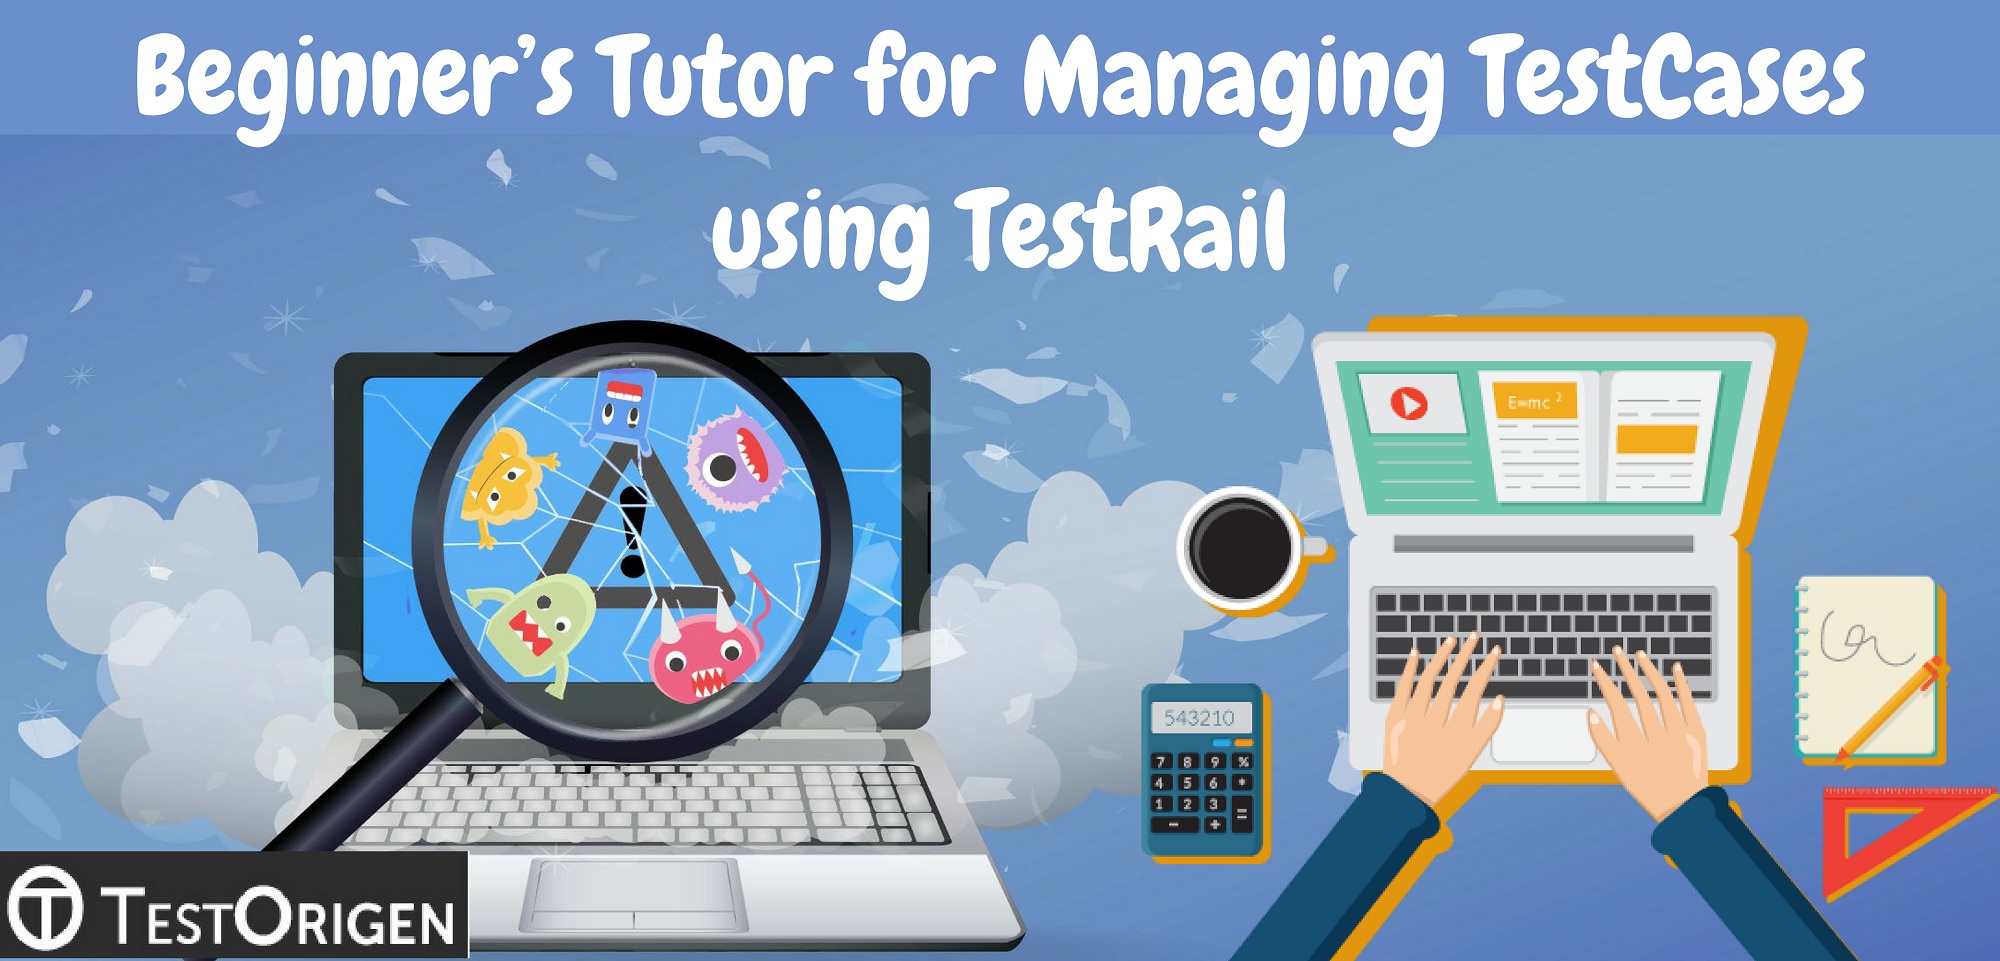 Beginner’s Tutor for Managing TestCases using TestRail